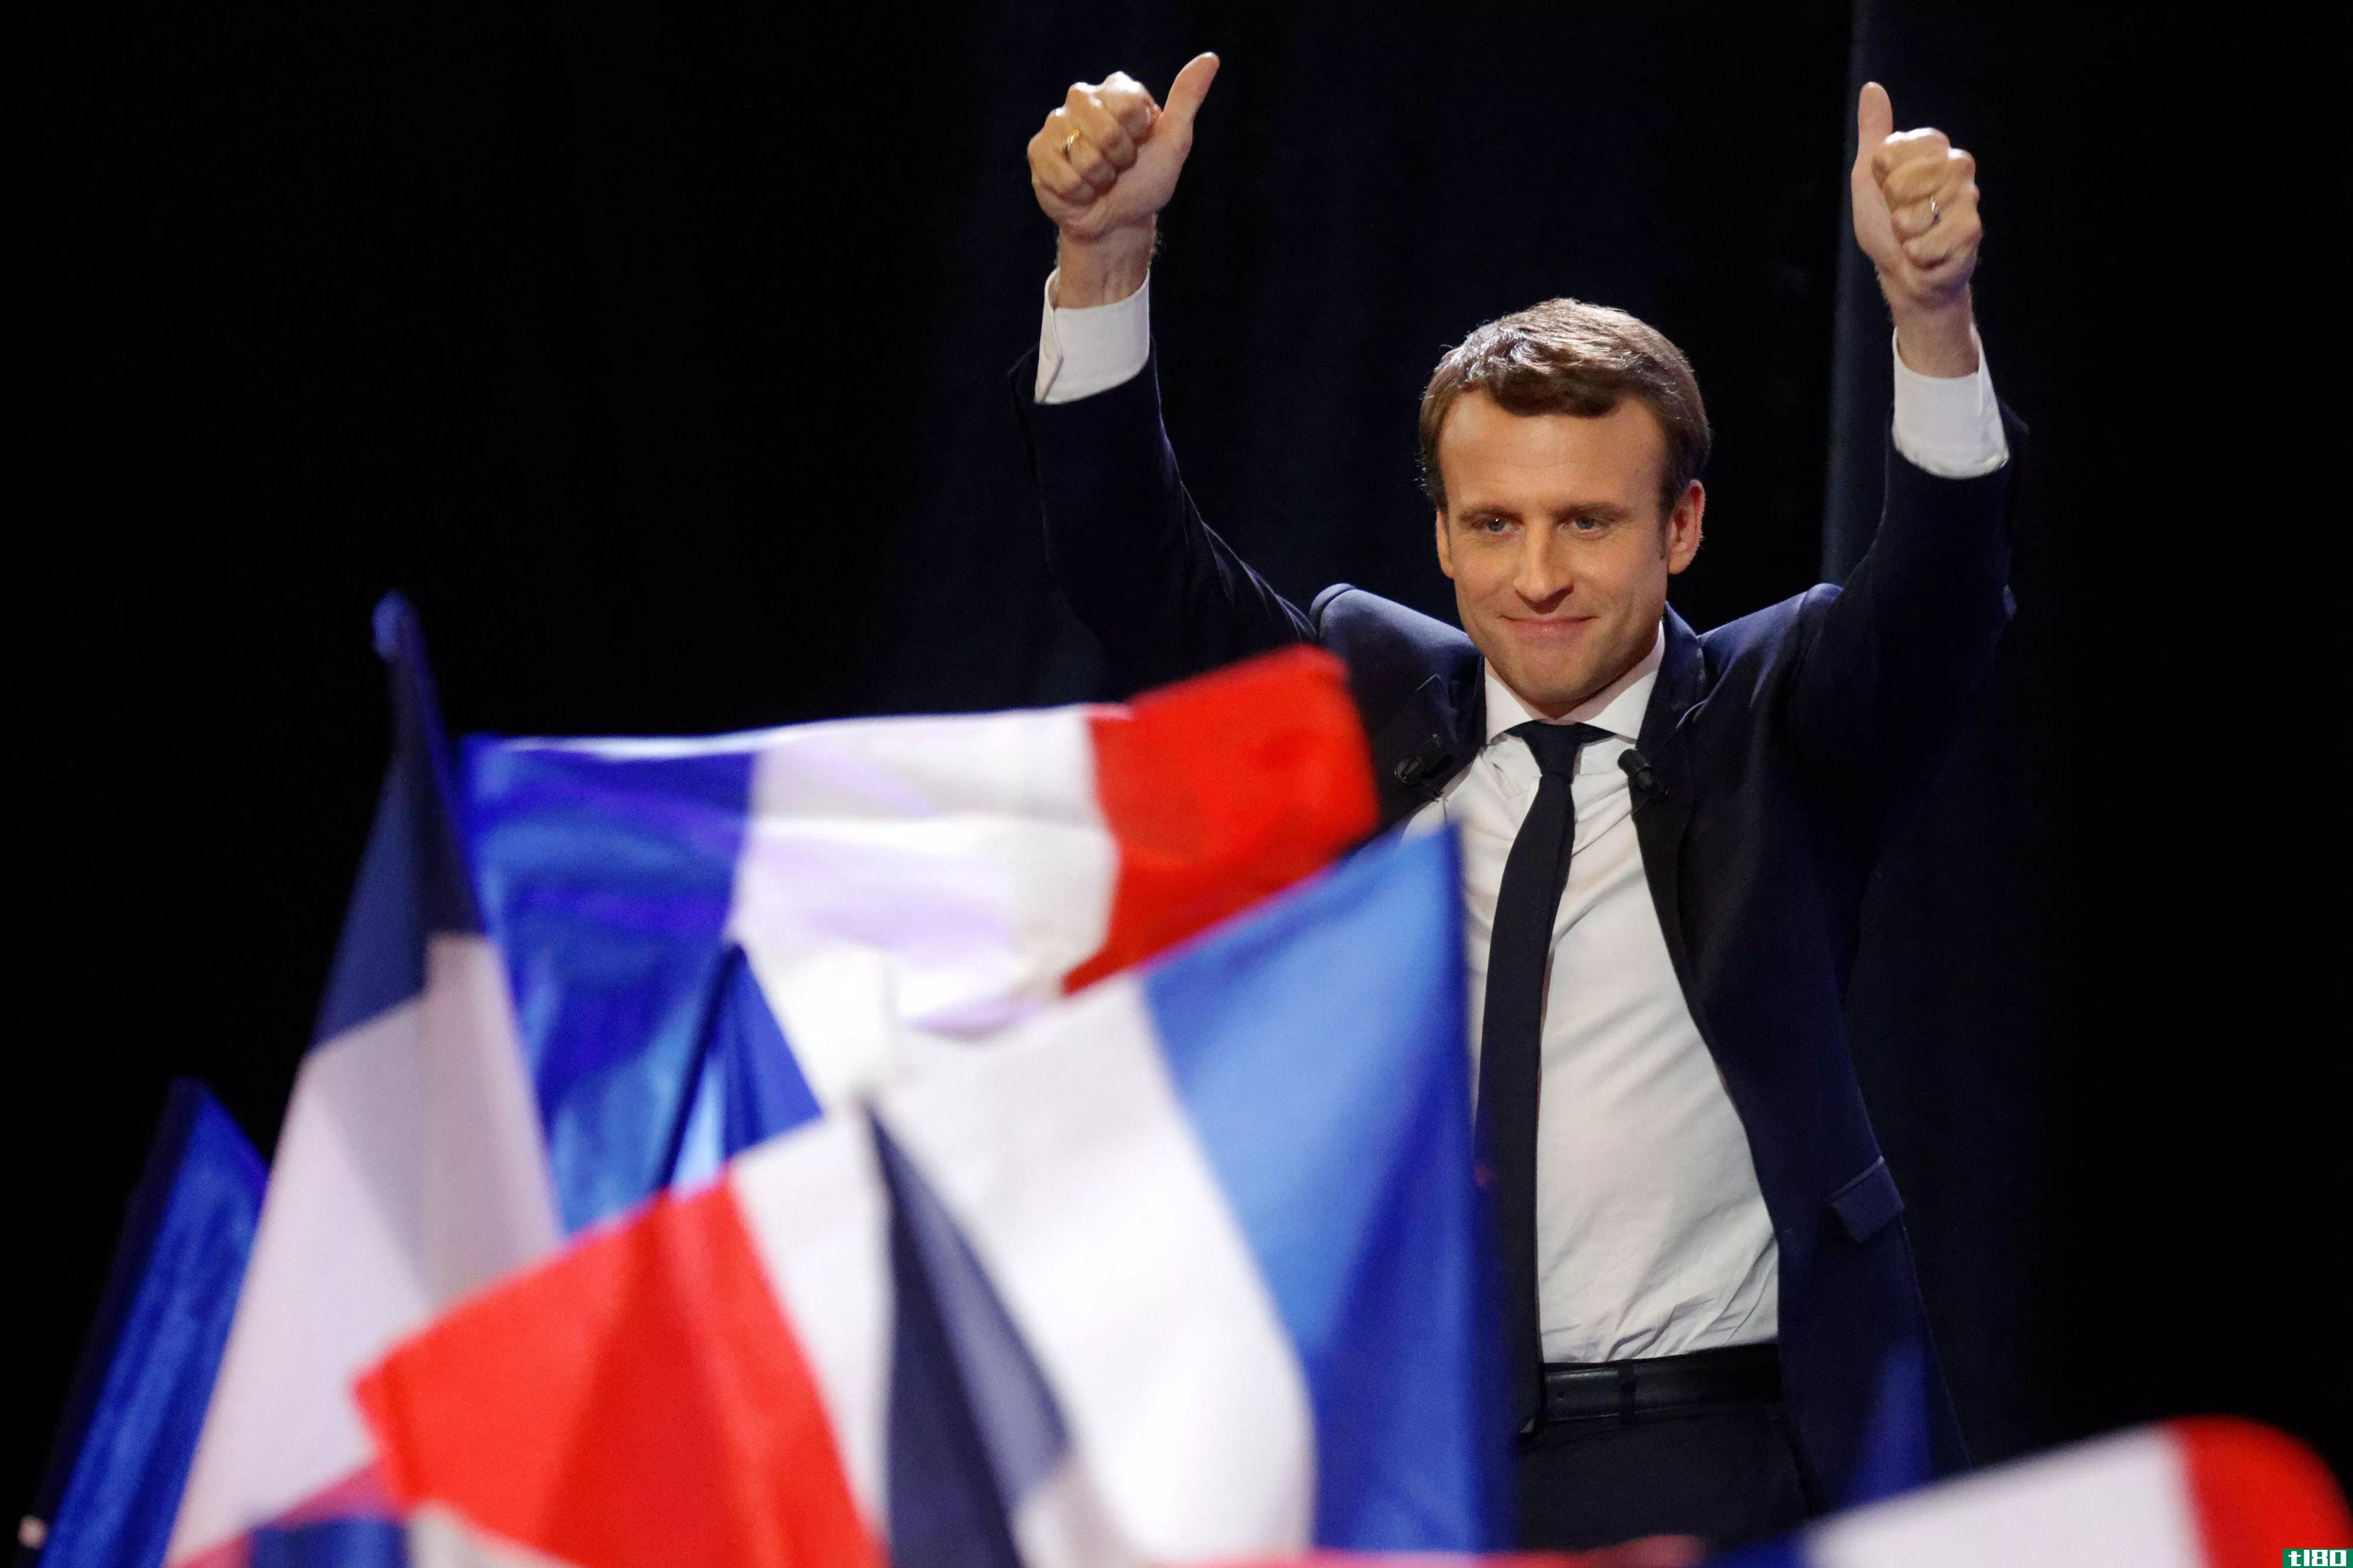 法国总统竞选的领跑者受到来自俄罗斯黑客的网络钓鱼攻击